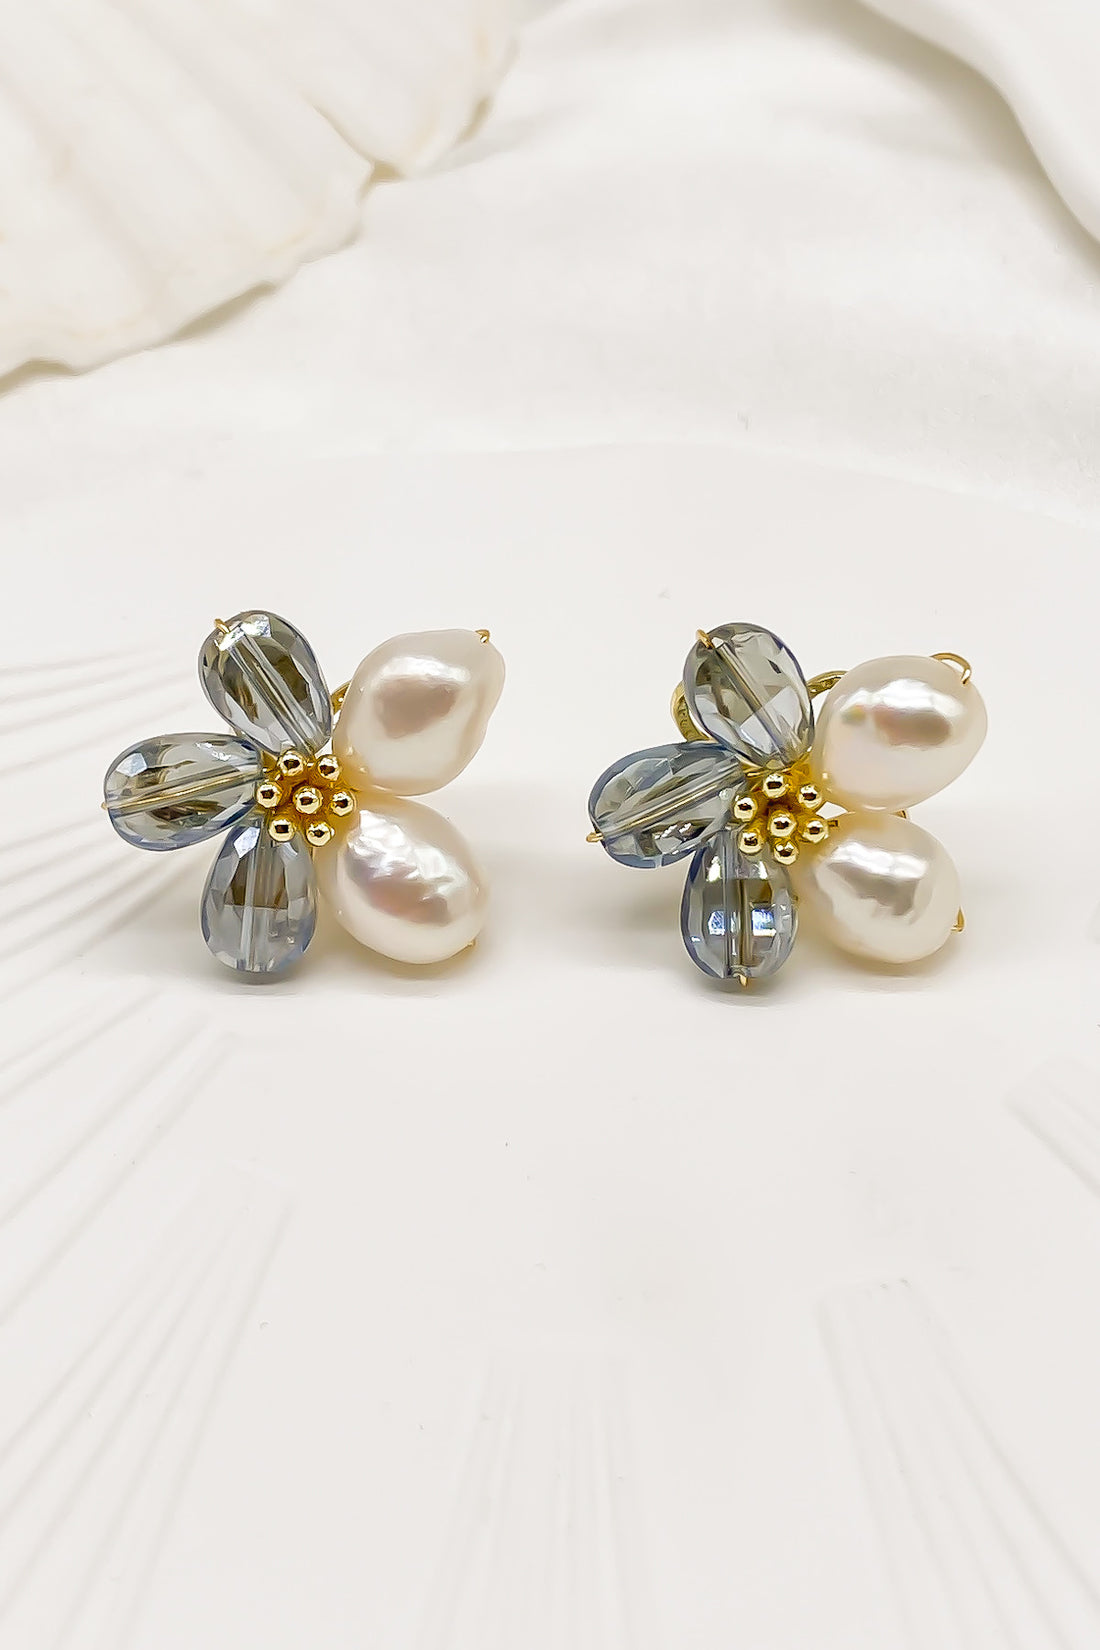 SKYE Shop Chic Modern Elegant Classy Women Jewelry French Parisian Minimalist Kira Cystal Flower Freshwater Pearl Earrings 5